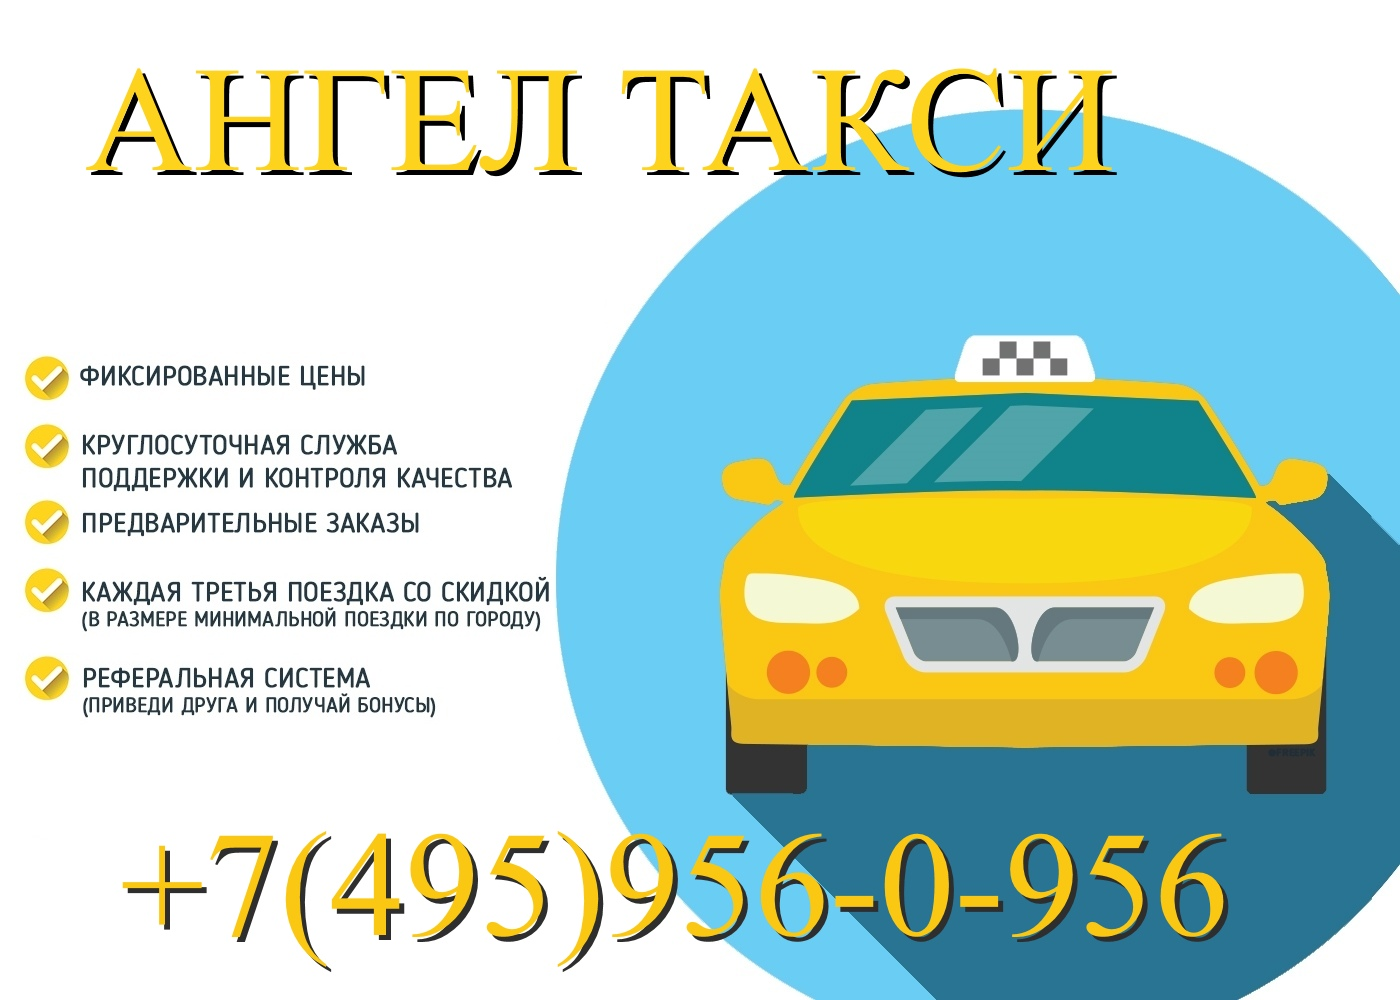 Дешевое такси межгород. Визитка такси. Такси ангел. Реклама такси. Междугородние поездки такси.